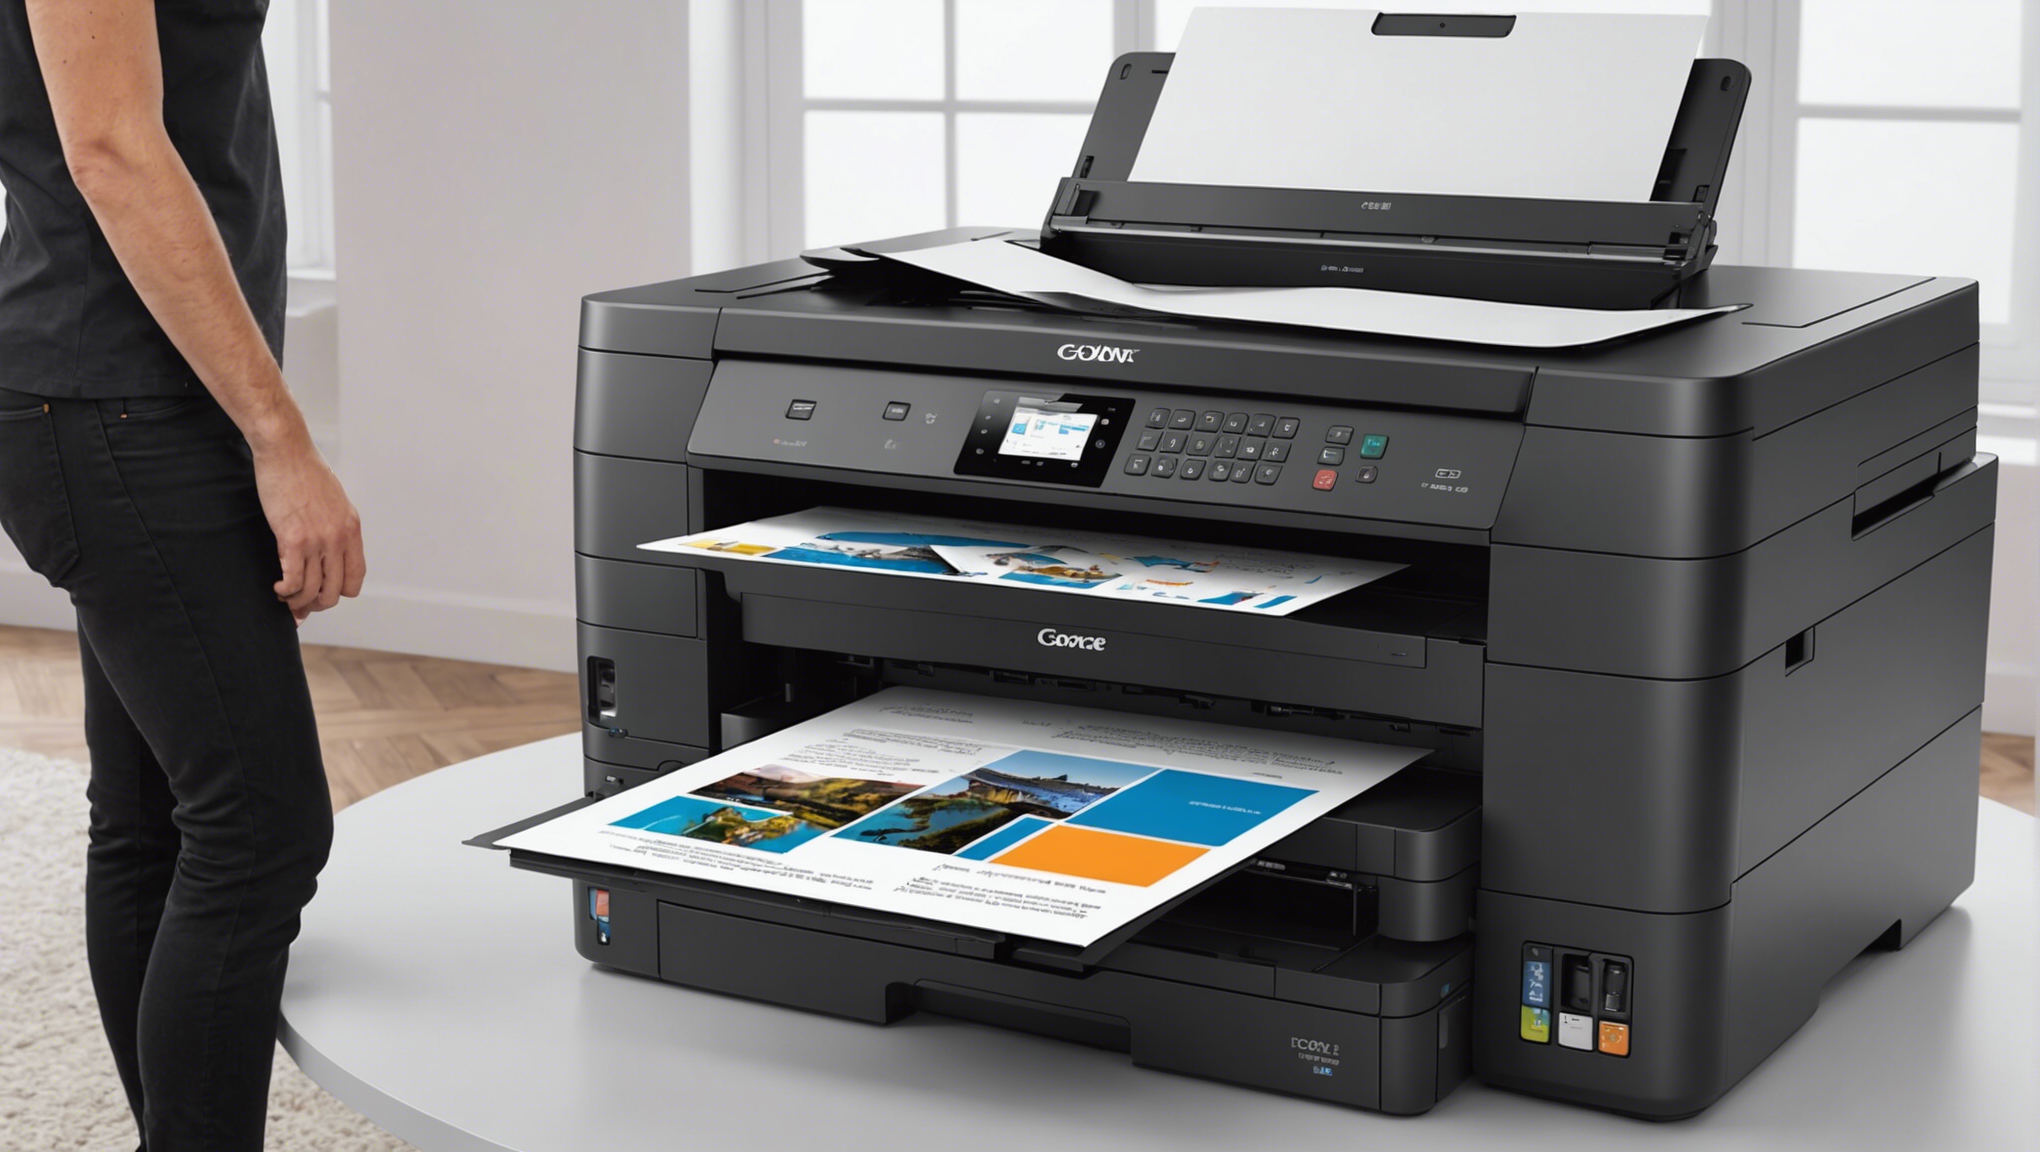 découvrez des imprimantes professionnelles grand format à prix abordables avec un service d'entretien et de support de qualité supérieure.